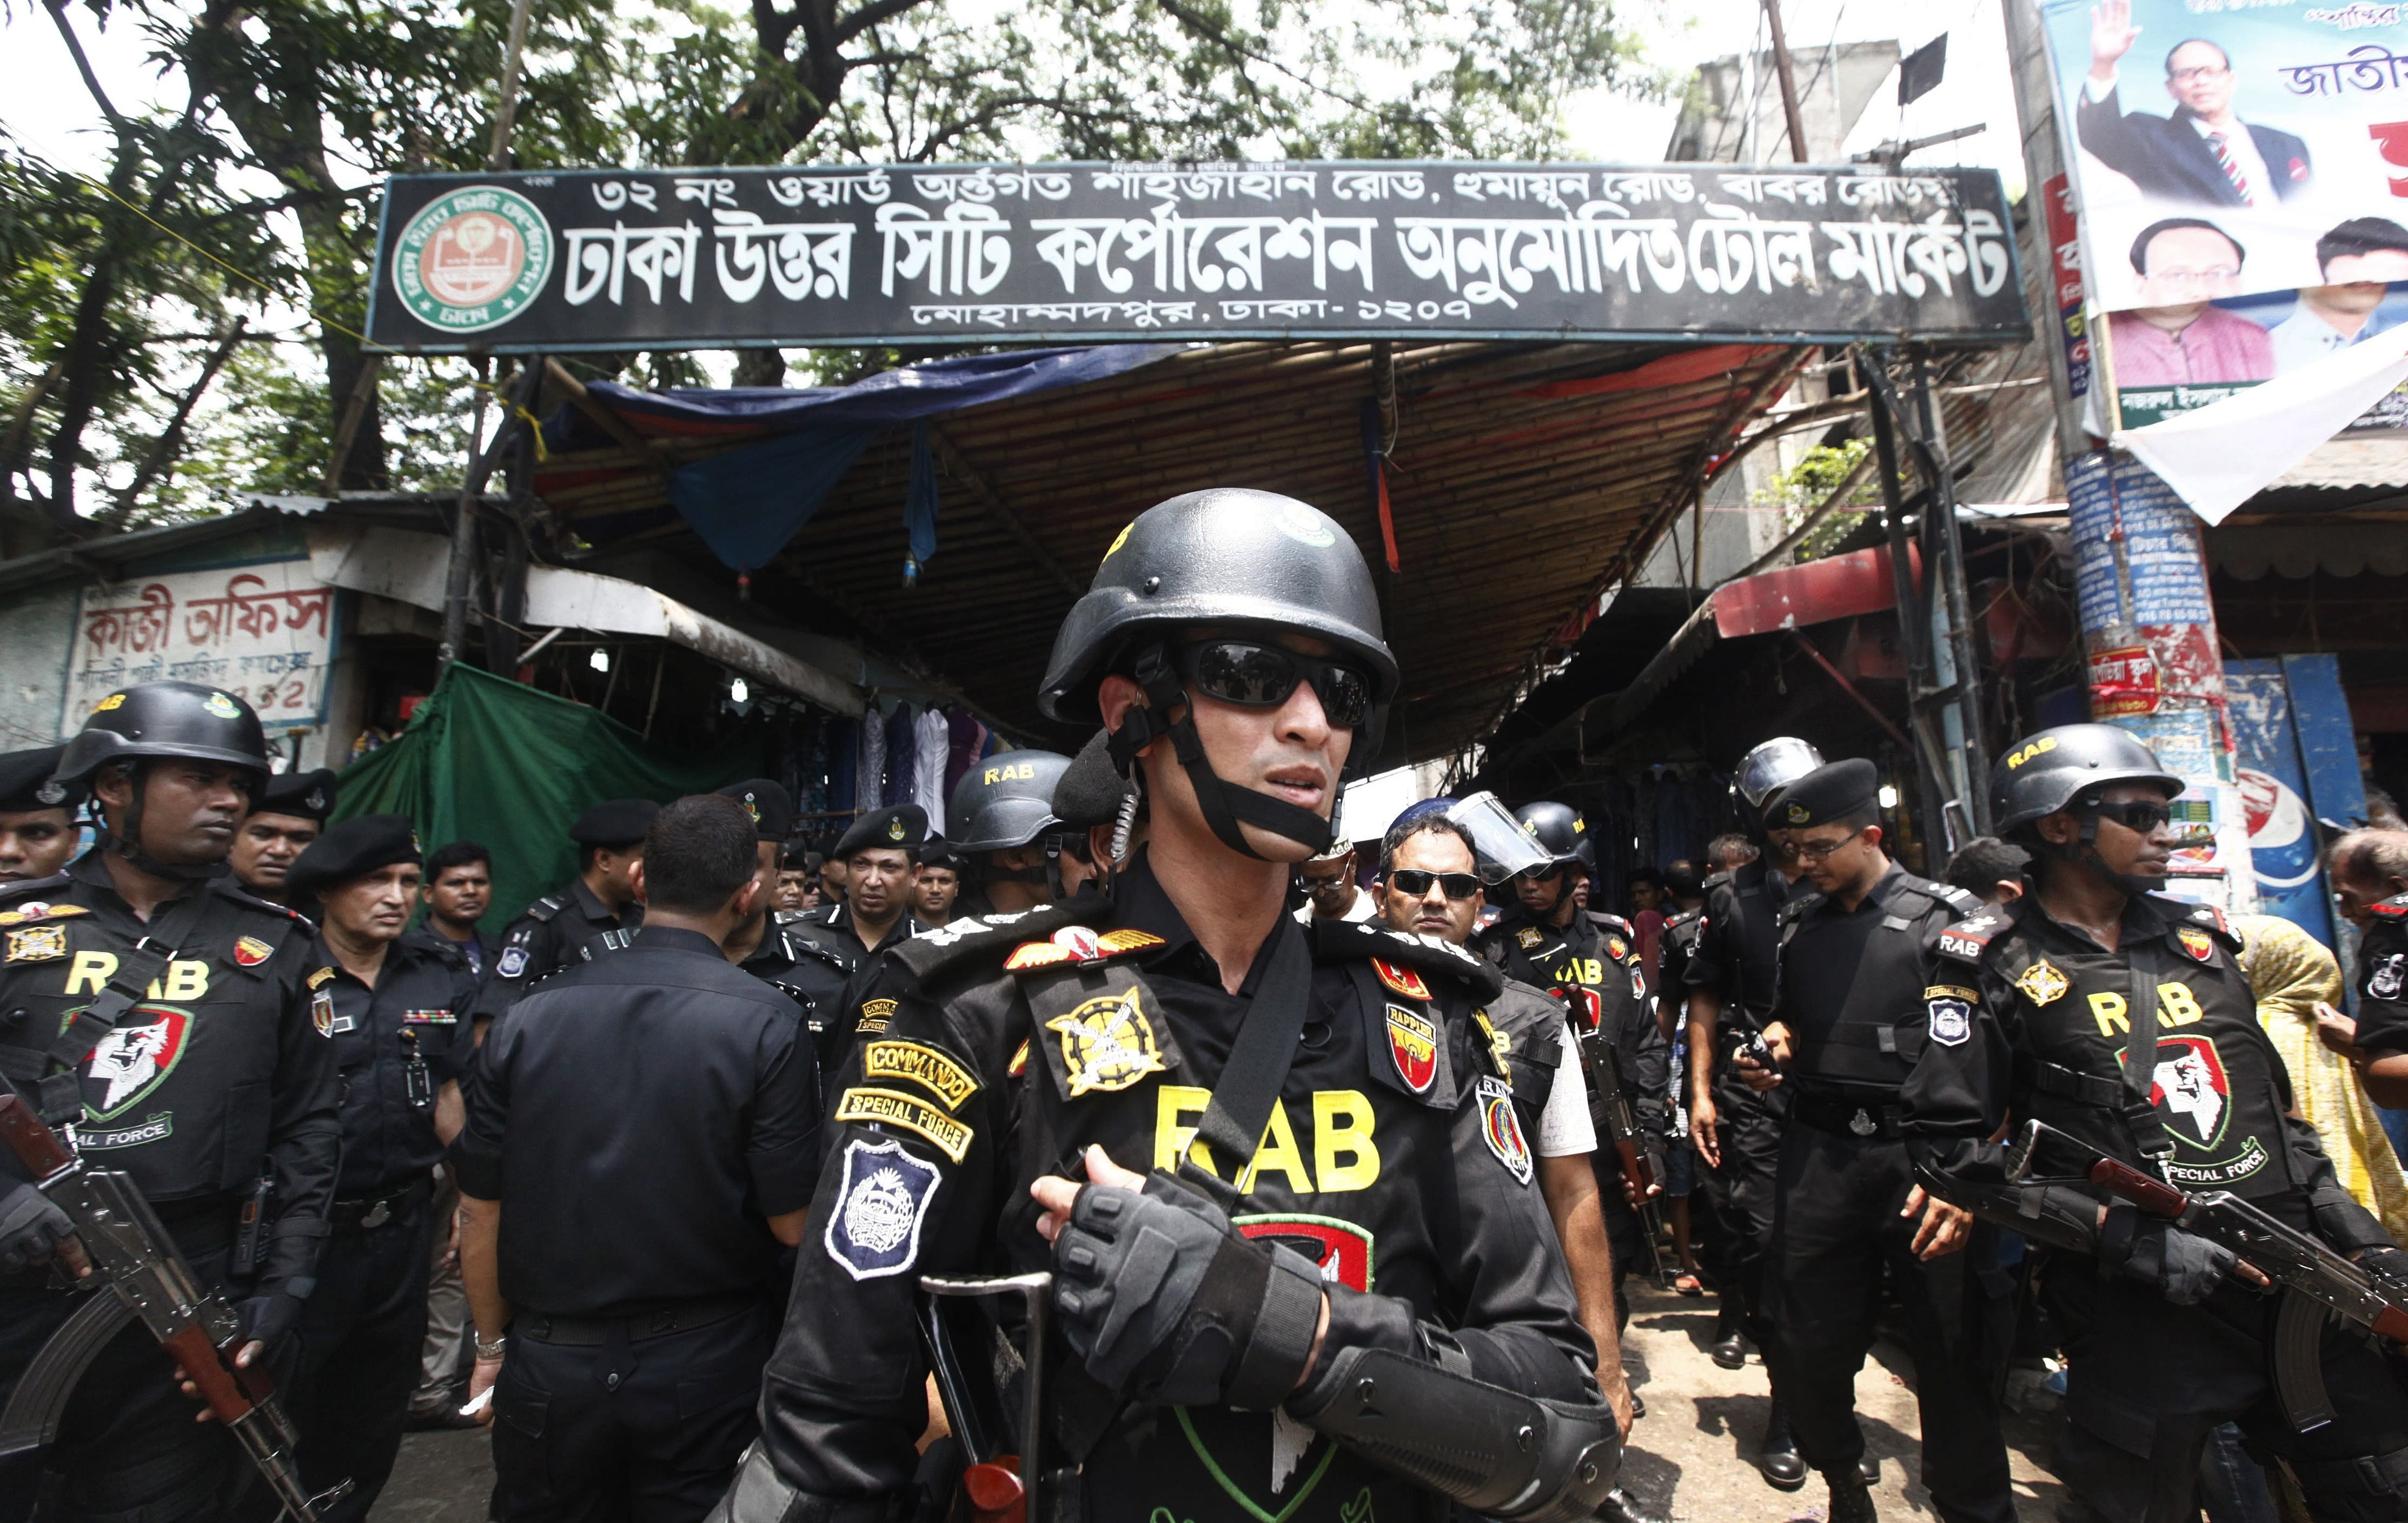 Bangladesh Cabinet Approves Death Sentence For Drug Crimes